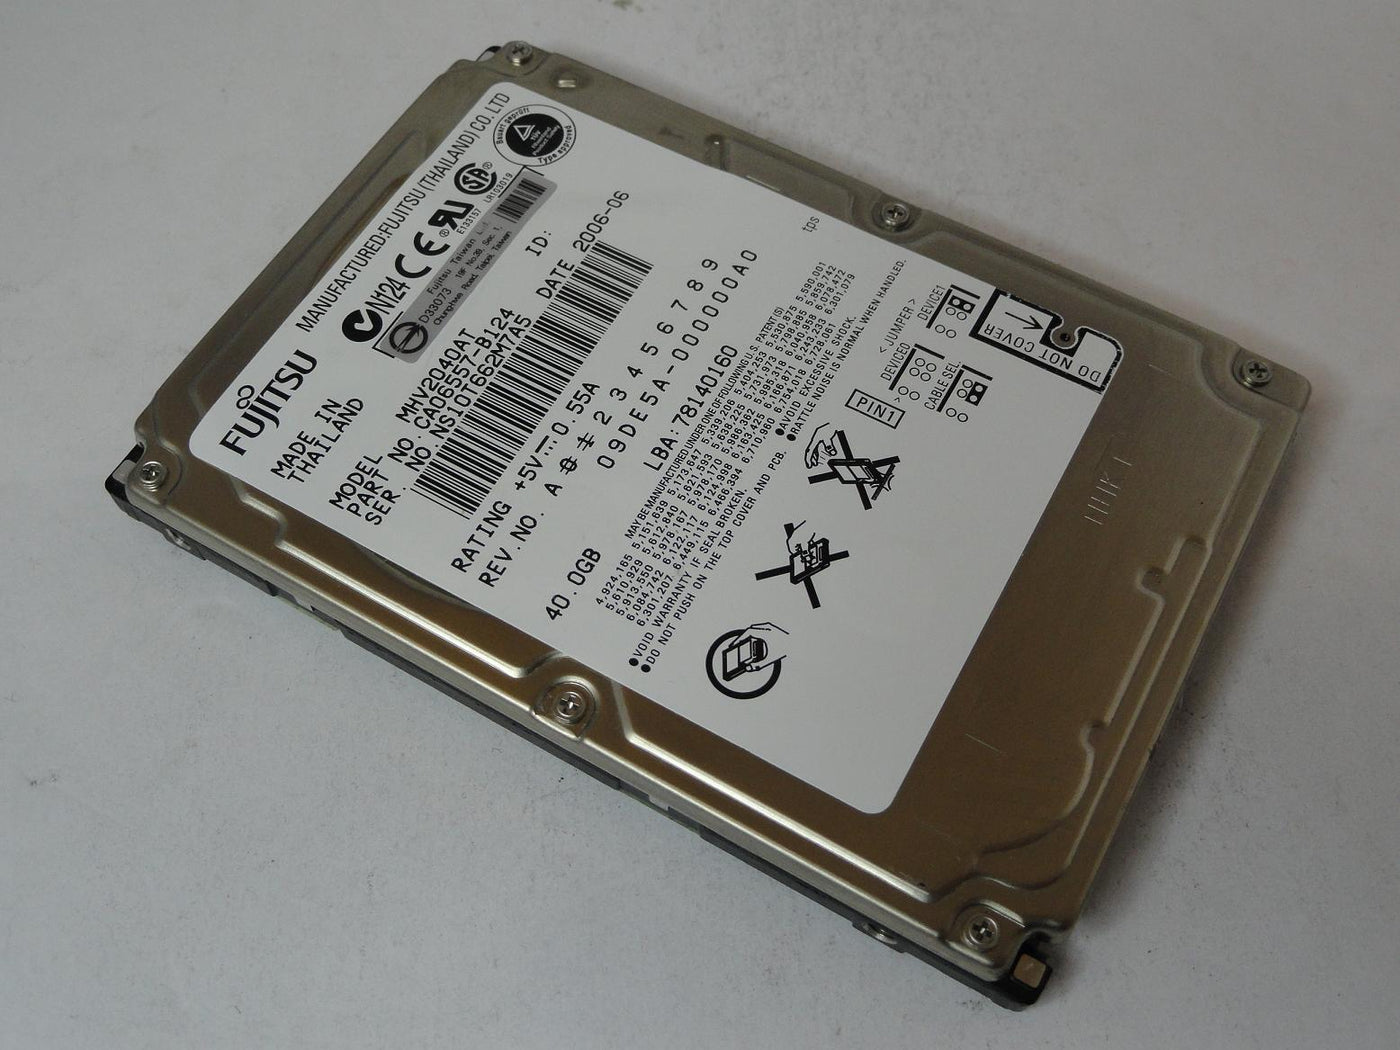 CA06557-B124 - Fujitsu 40GB IDE 4200rpm 2.5in HDD - USED